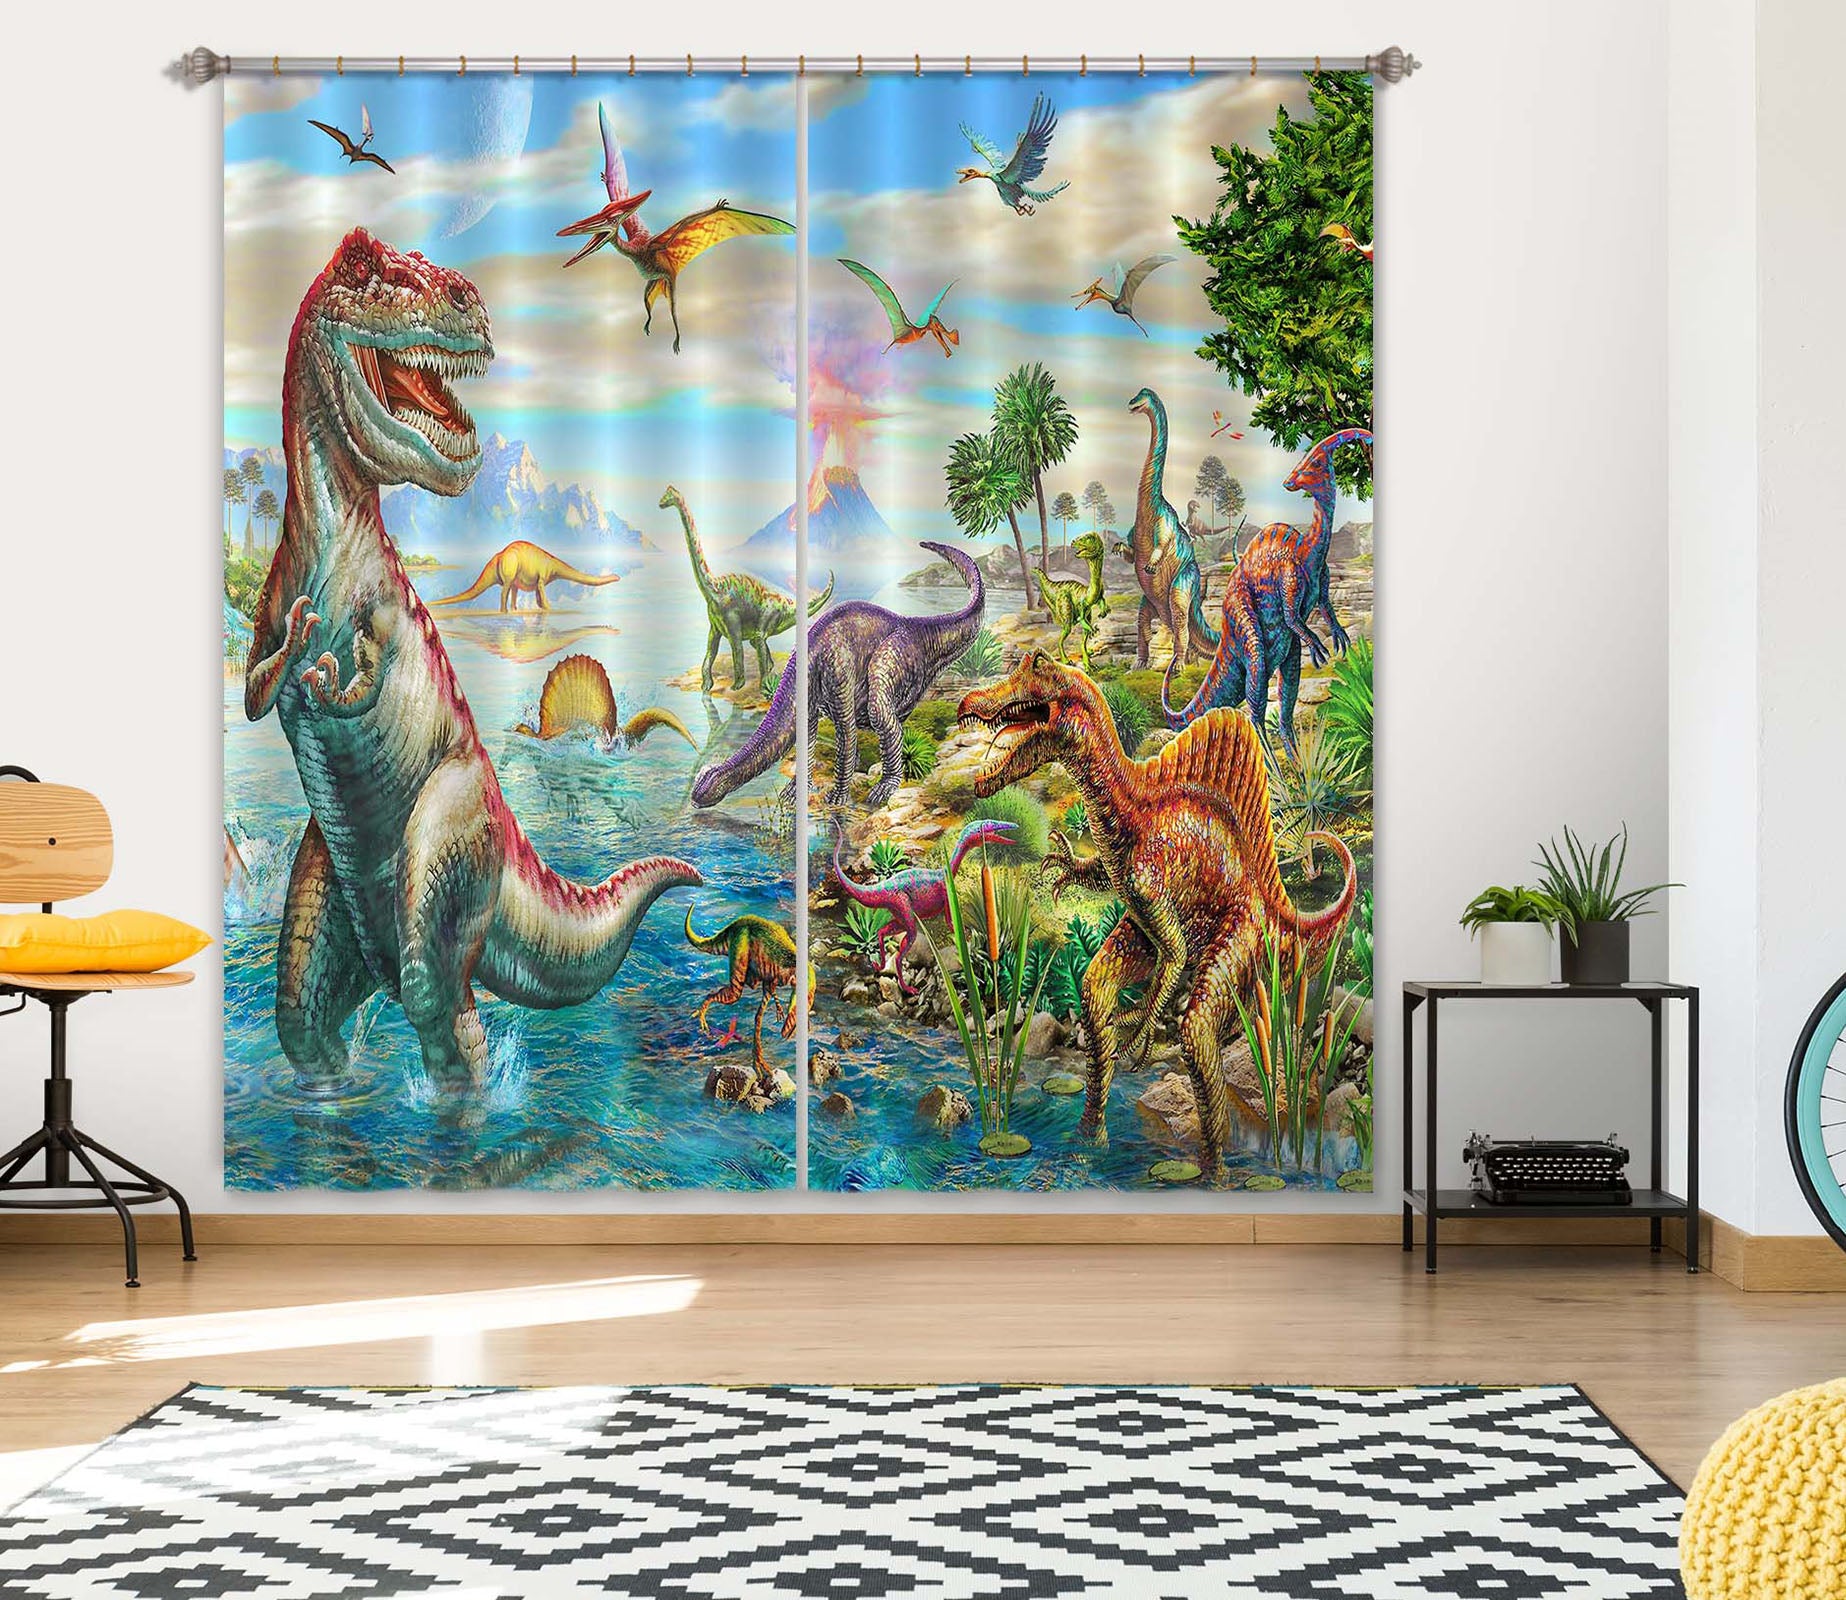 3D Giant Dinosaur 059 Adrian Chesterman Curtain Curtains Drapes